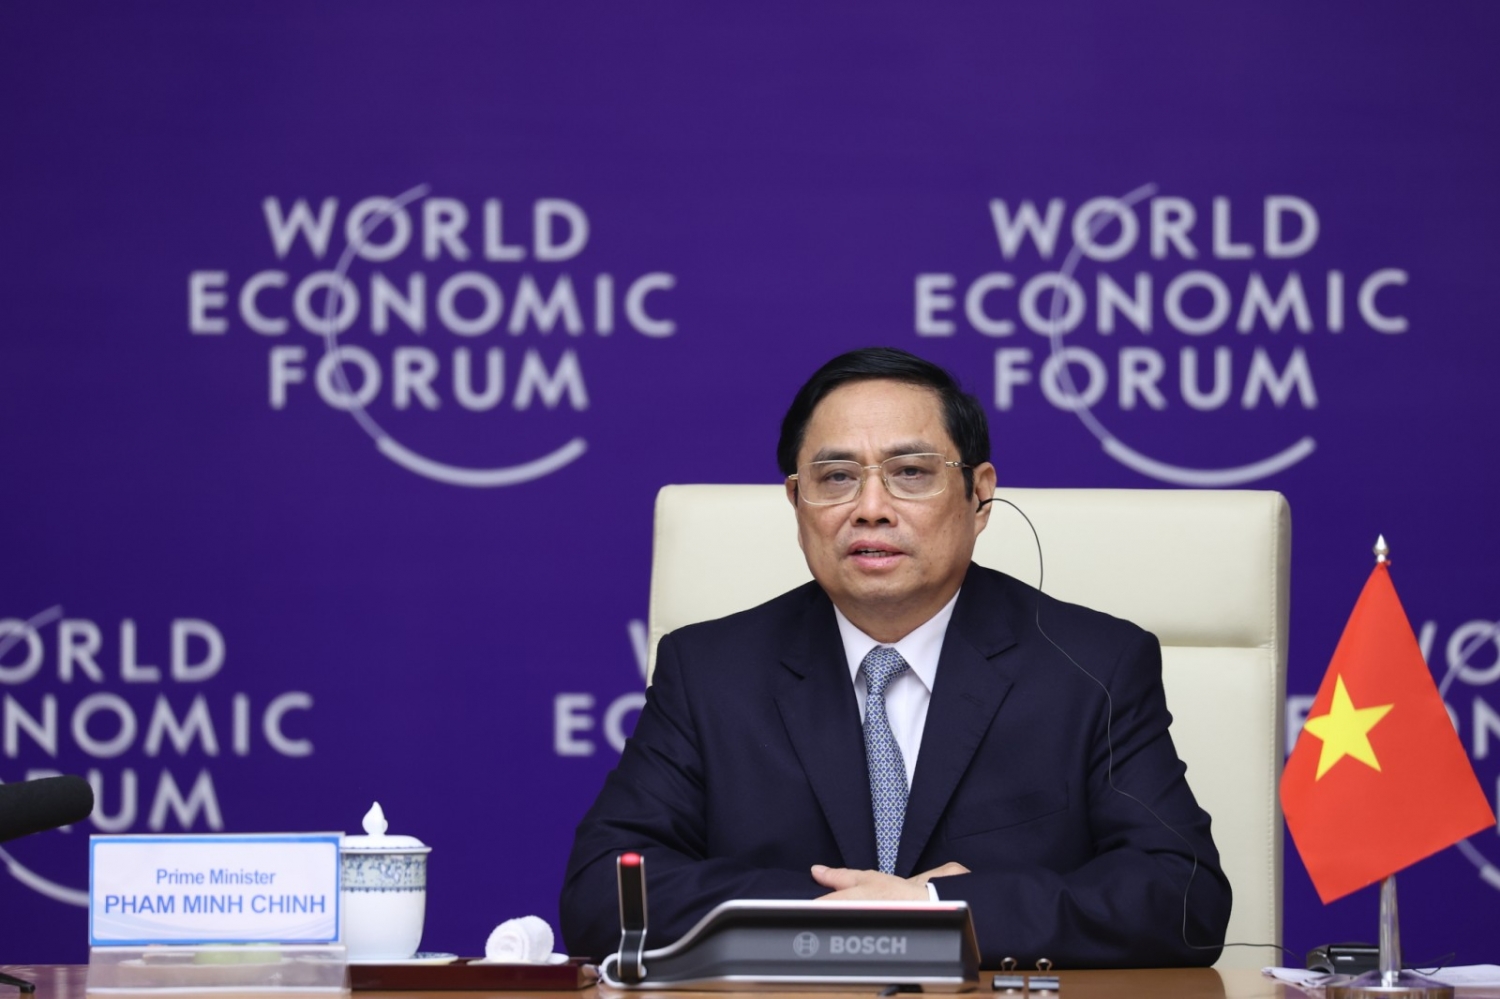 Thủ tướng Phạm Minh Chính đồng chủ trì Đối thoại chiến lược quốc gia Việt Nam - WEF